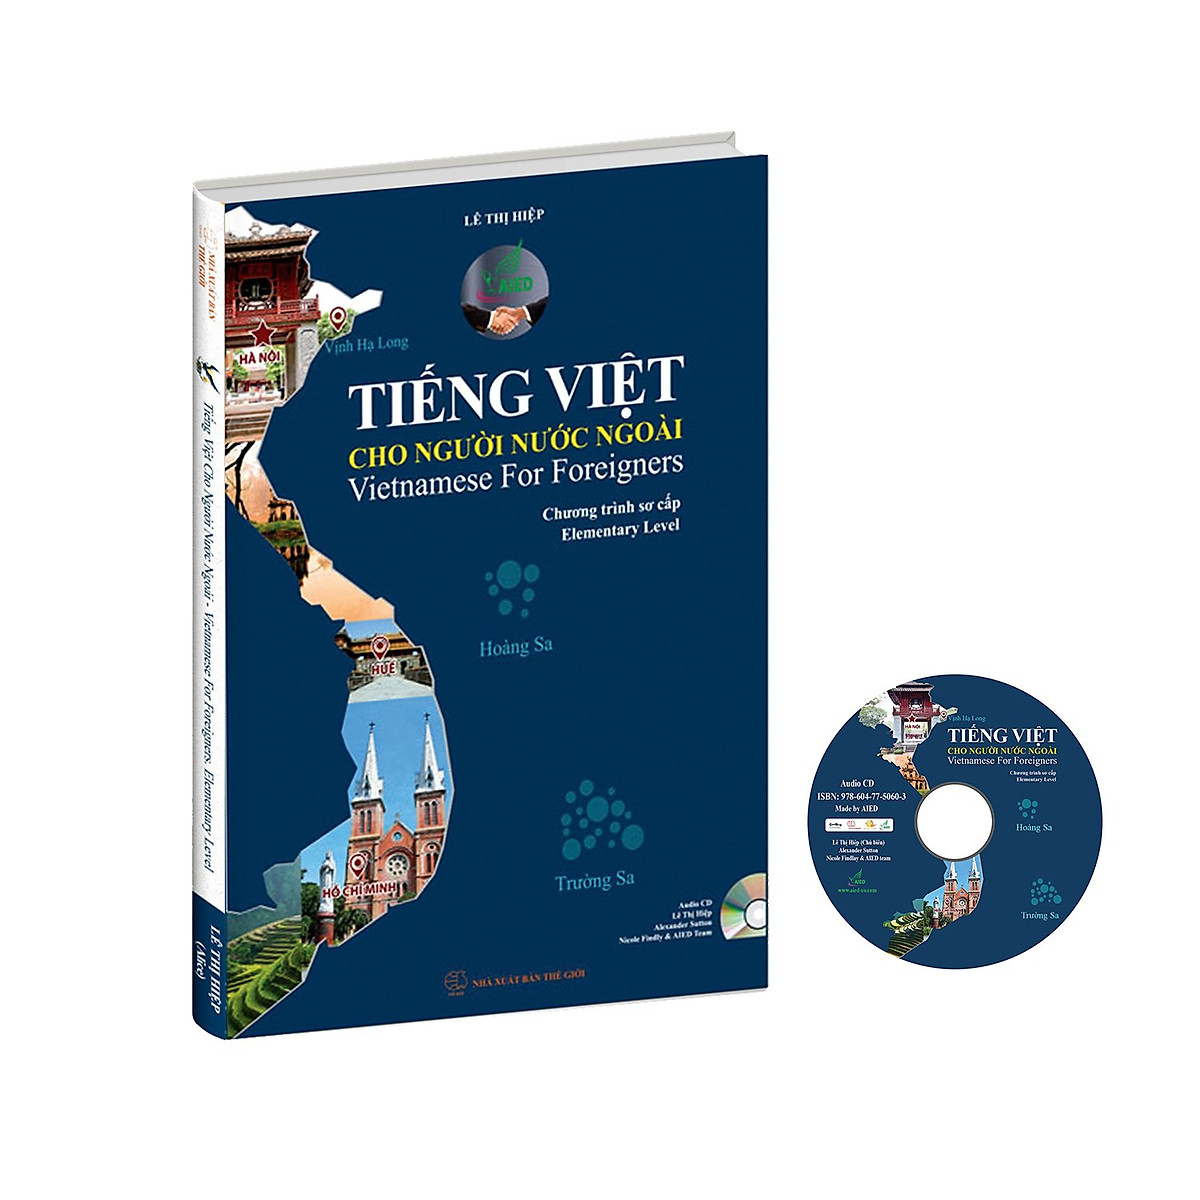 Bộ sách Tiếng Việt cho người nước ngoài 2 cấp độ Sơ cấp - Trung cấp (Kèm CD)